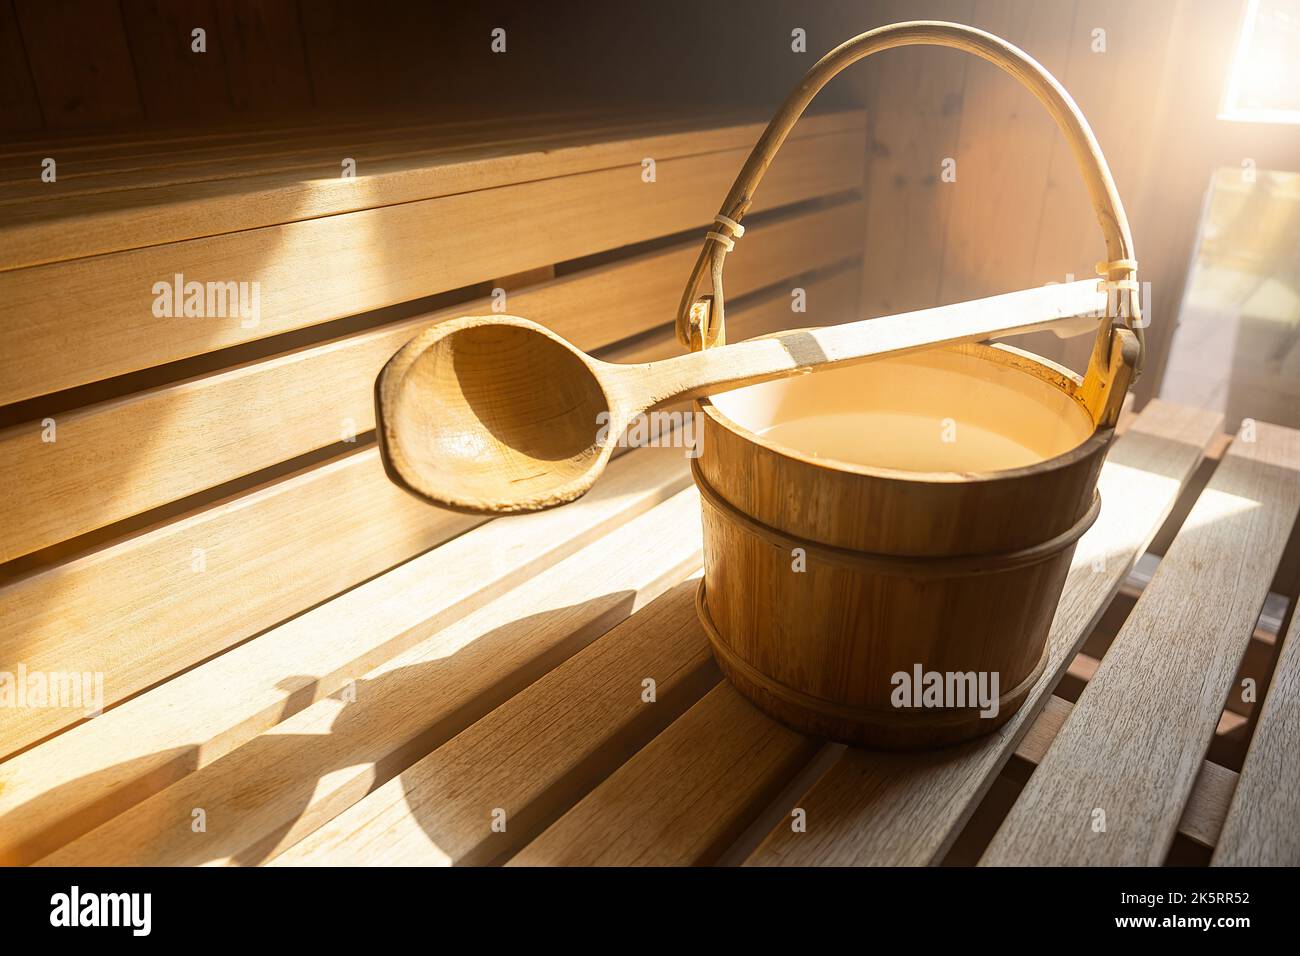 Cucchiaio in legno con secchio d'acqua per versare acqua su pietre calde nella sauna finlandese, spa e bagno termale a temperatura calda immagine concettuale. Sauna A. Foto Stock